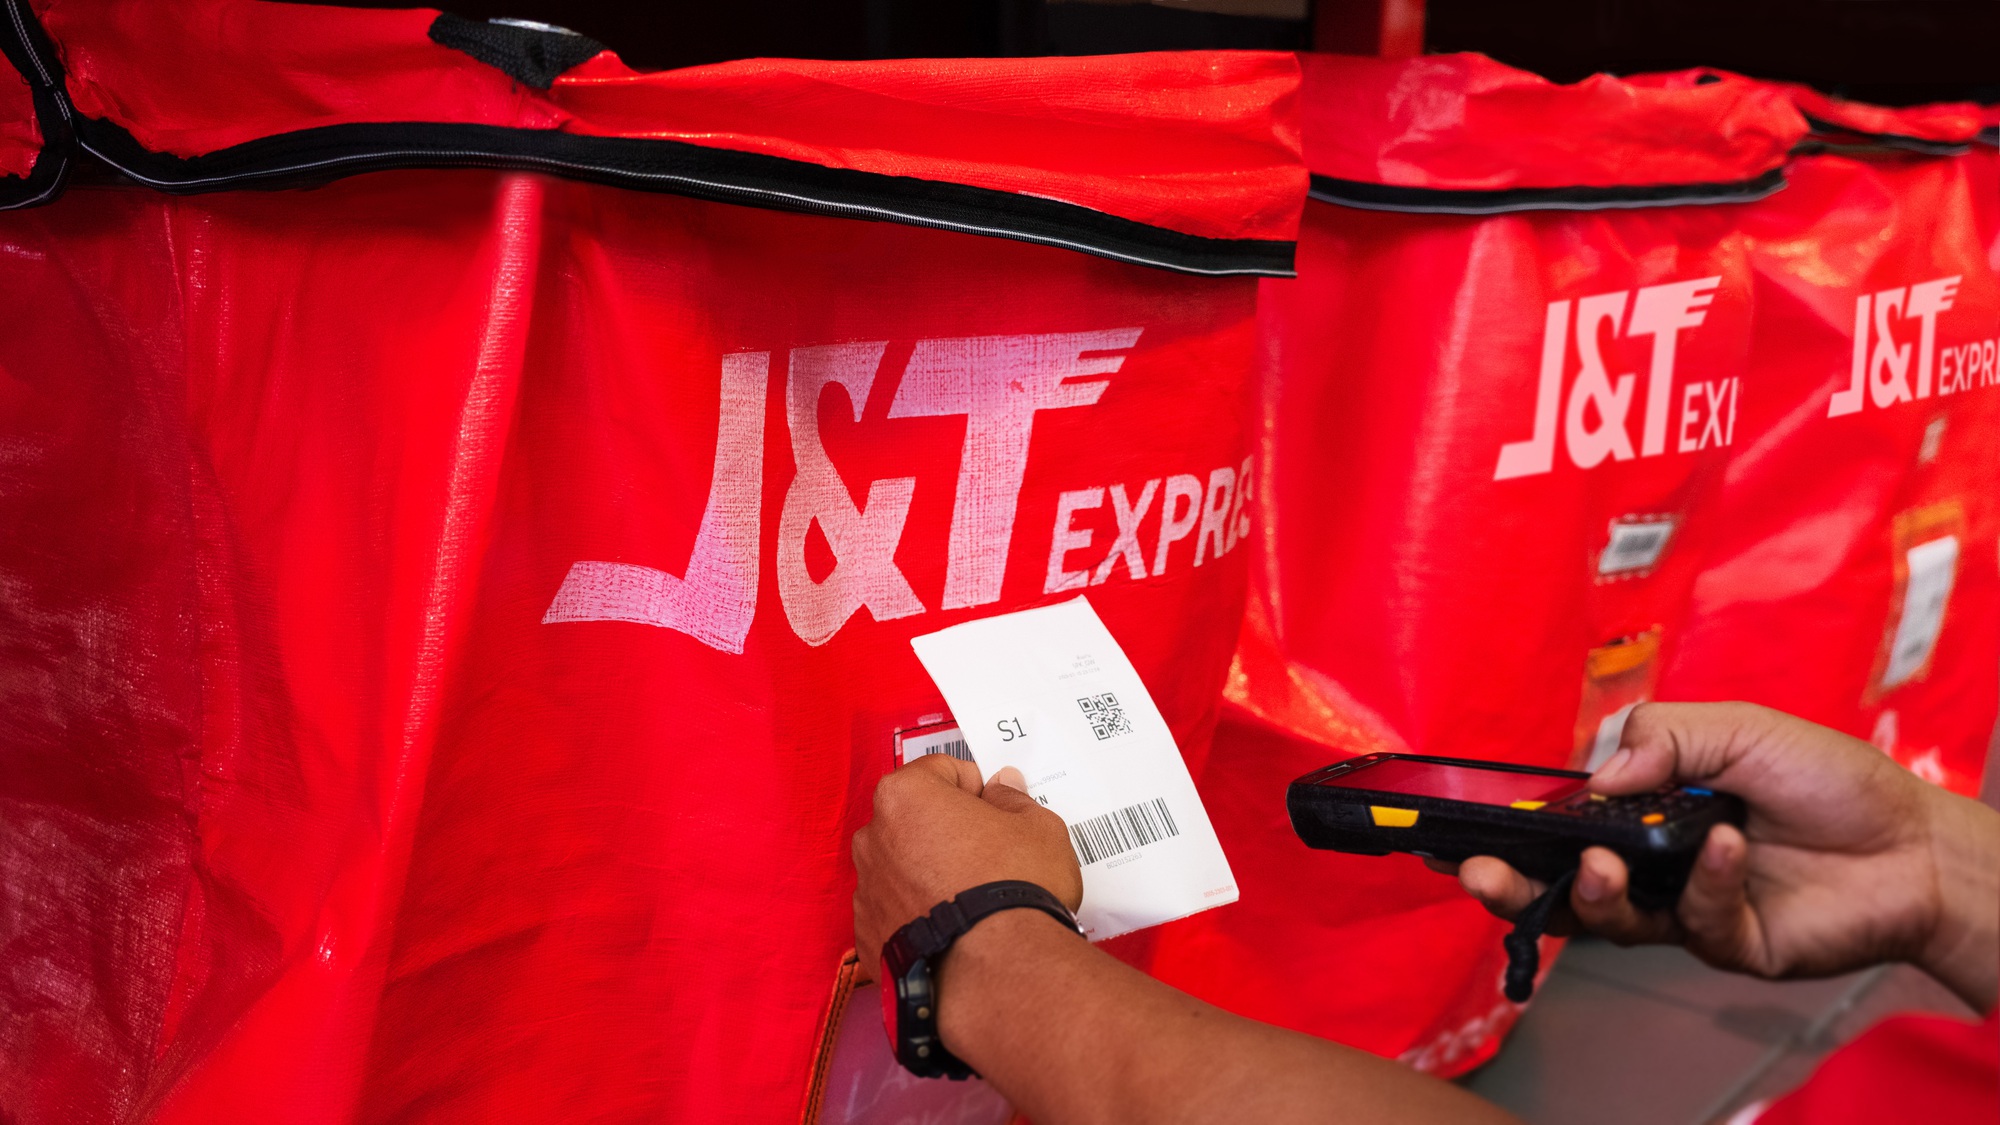 J&T Express tăng cường các giải pháp bảo vệ môi trường góp phần xanh hóa ngành vận chuyển - Ảnh 2.